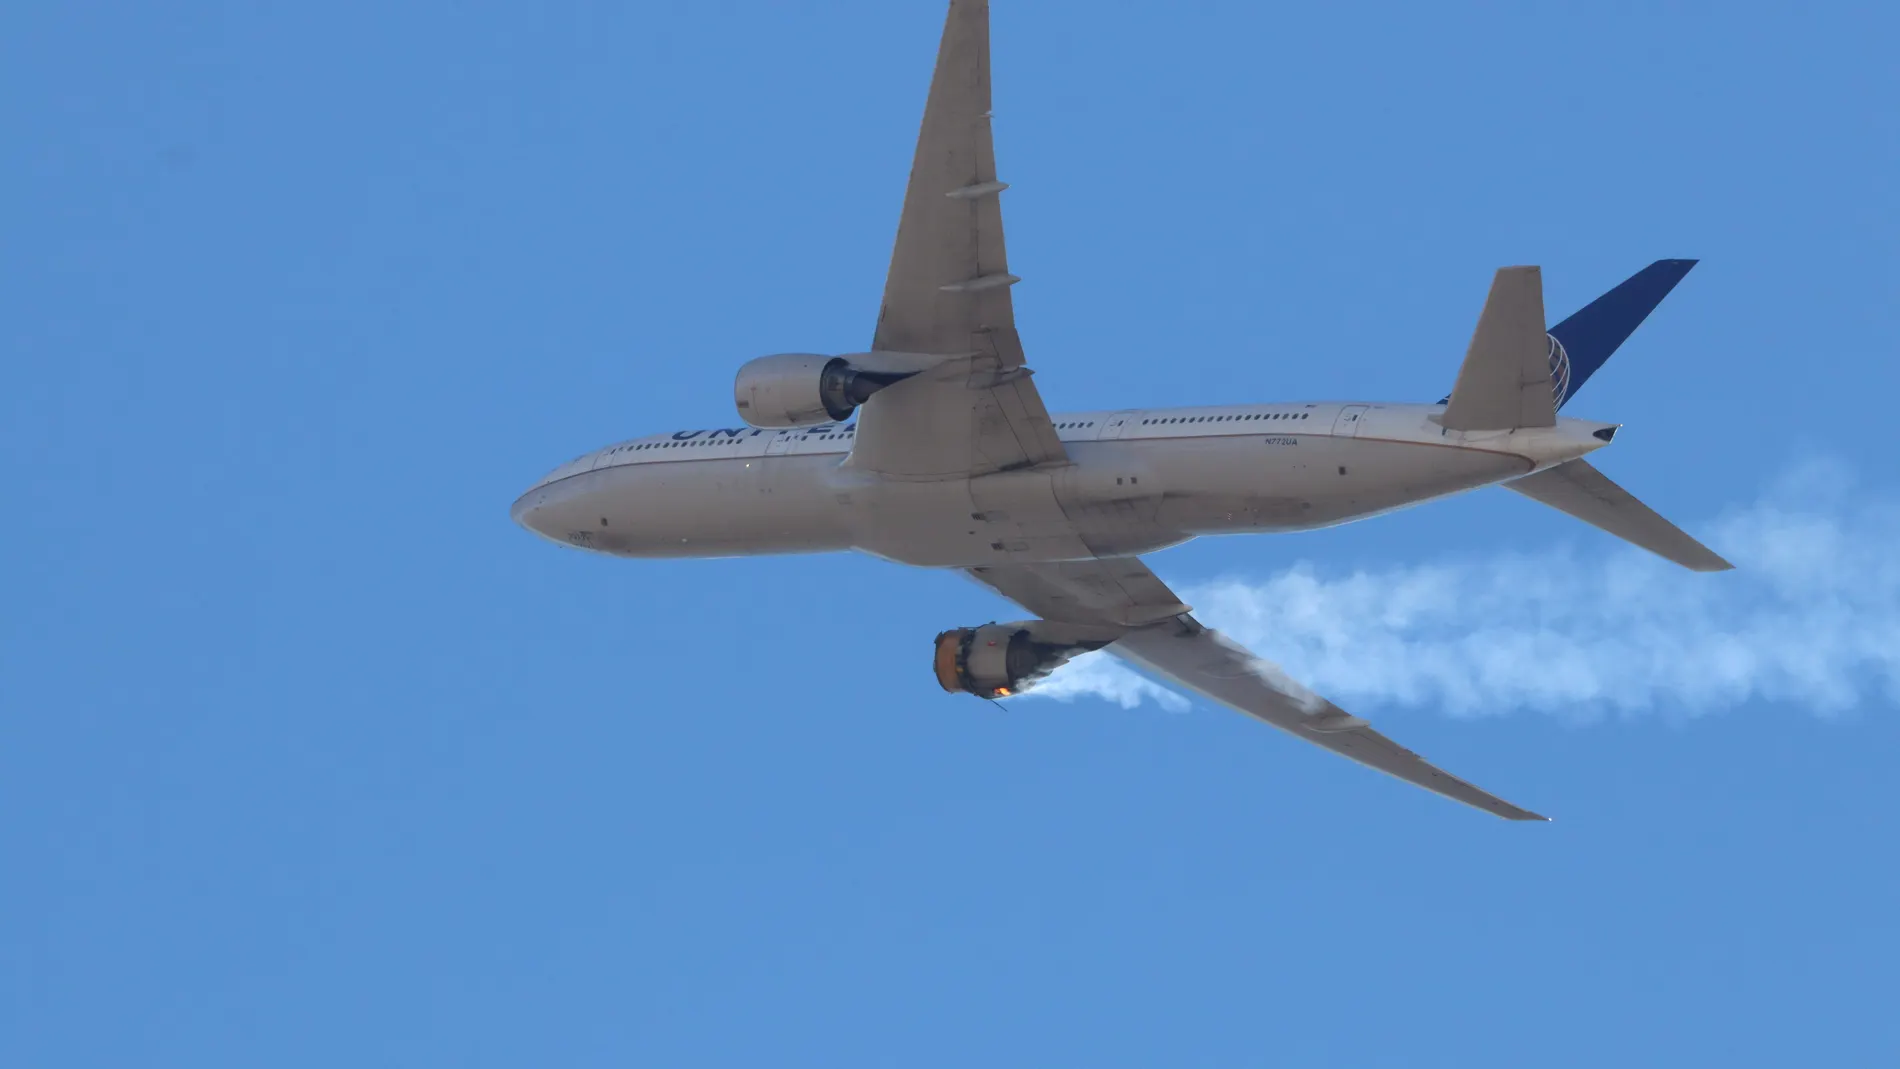 Una foto proporcionada por el usuario de Instagram Hayden Smith (speedbird5280) muestra el vuelo 328 de United Airlines con un motor en llamas, cerca de Denver, Colorado, EE. UU